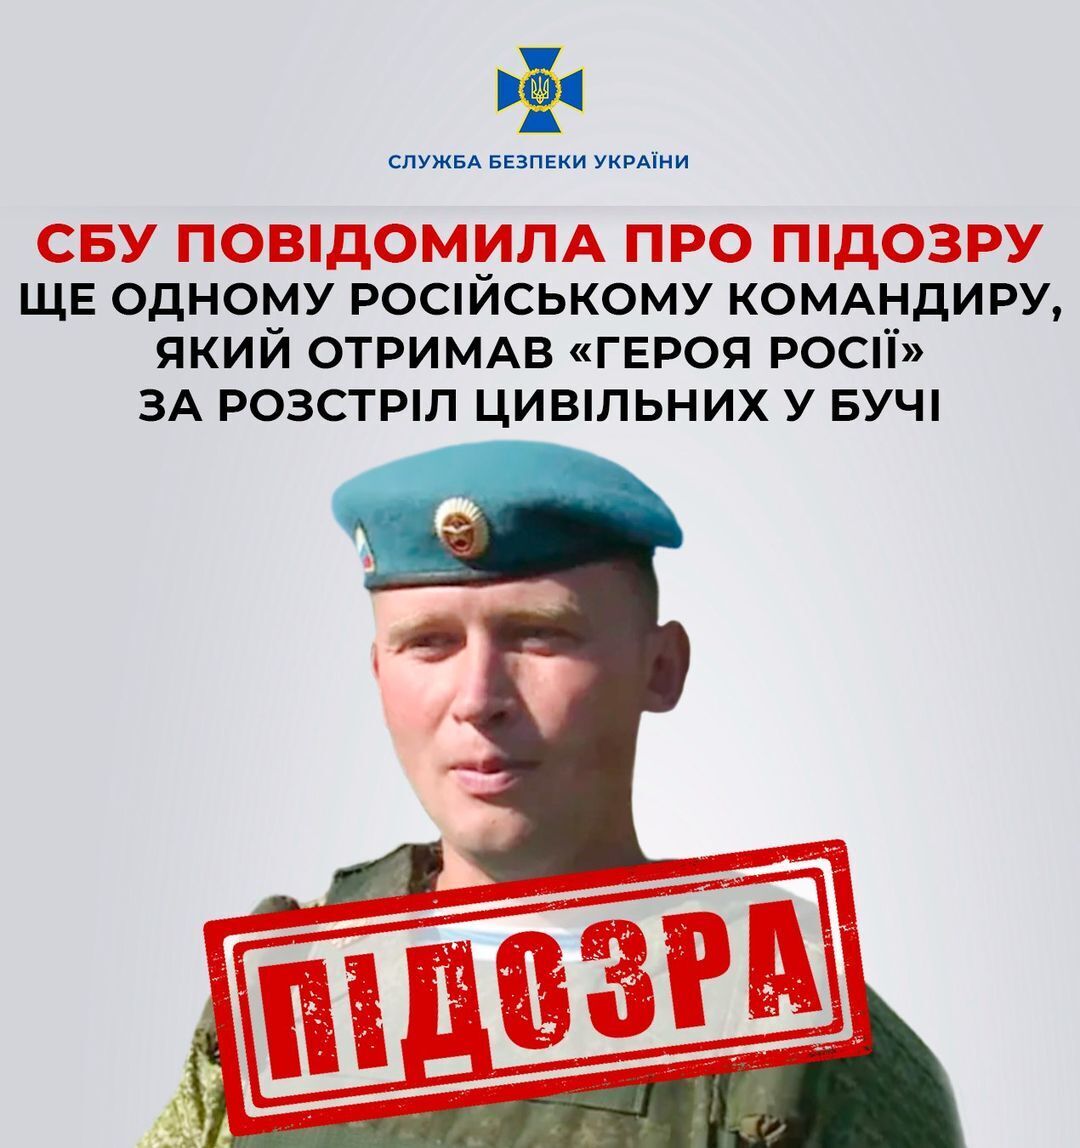 СБУ сообщила о подозрении оккупанту, получившему "героя России" за расстрел гражданских в Буче. Фото